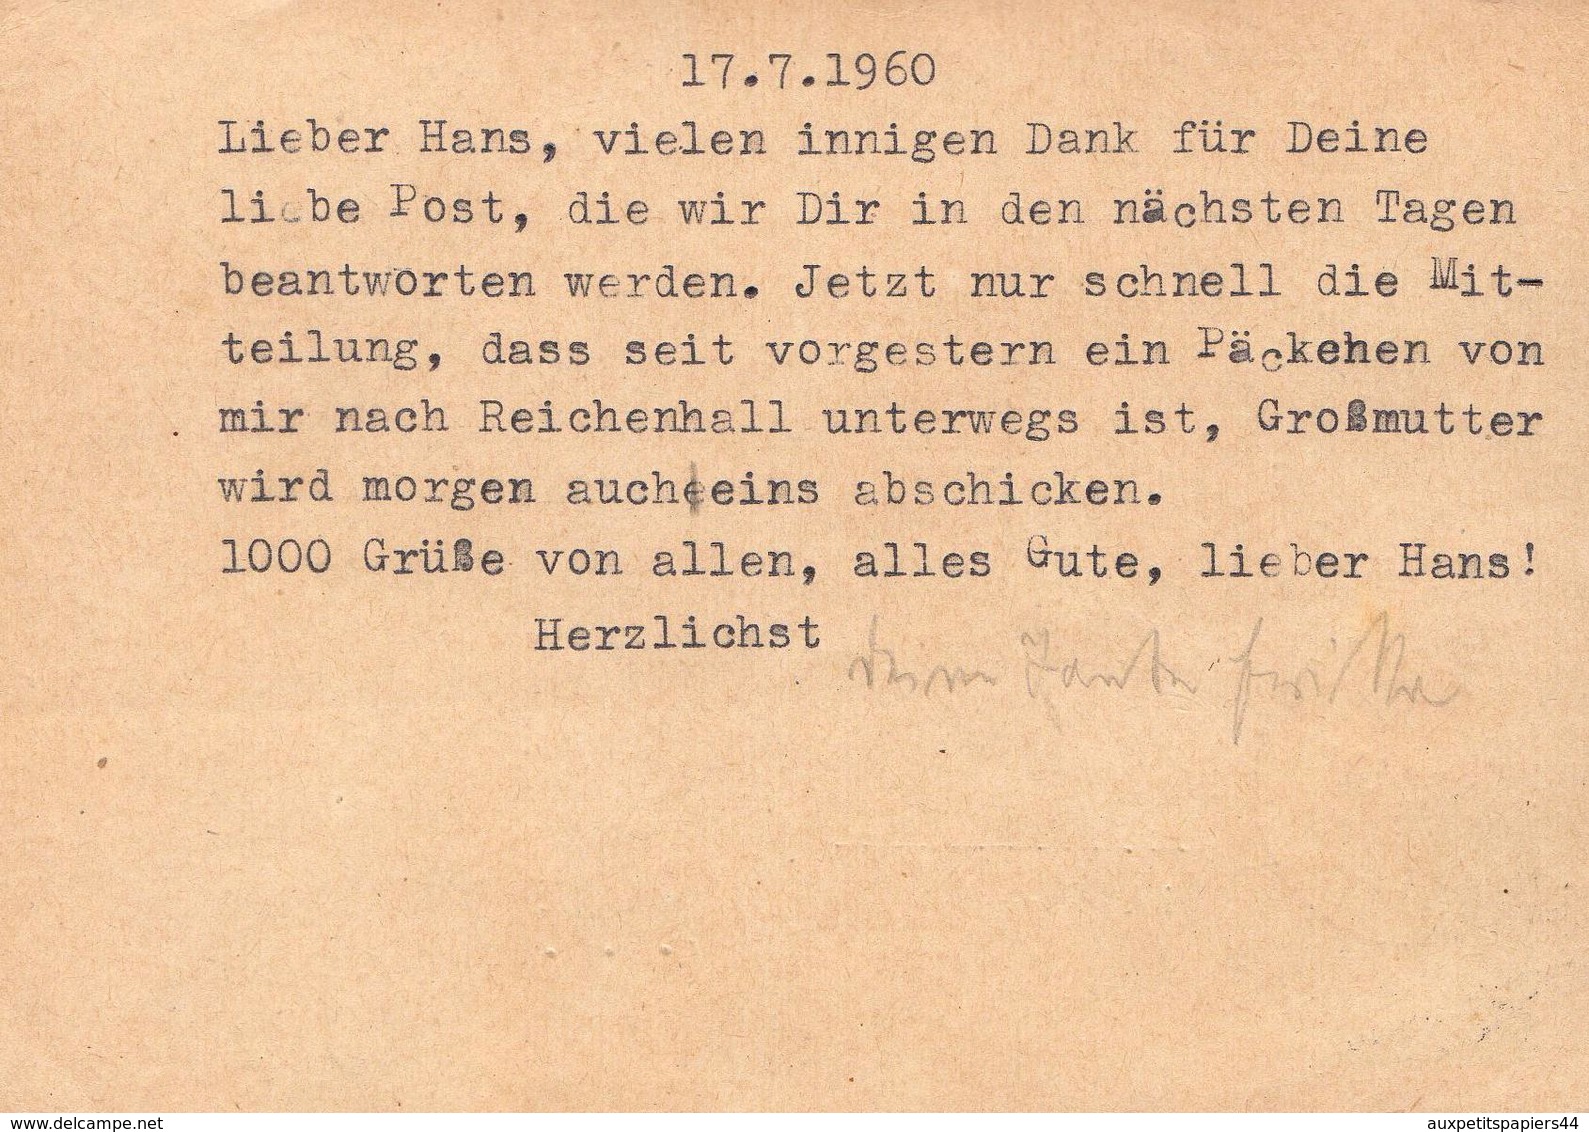 Lot de 24 CPA Lettres avec Timbre et Cachet avec correspondance Allemande de 1900 à 1960 - DDR - Deutschland